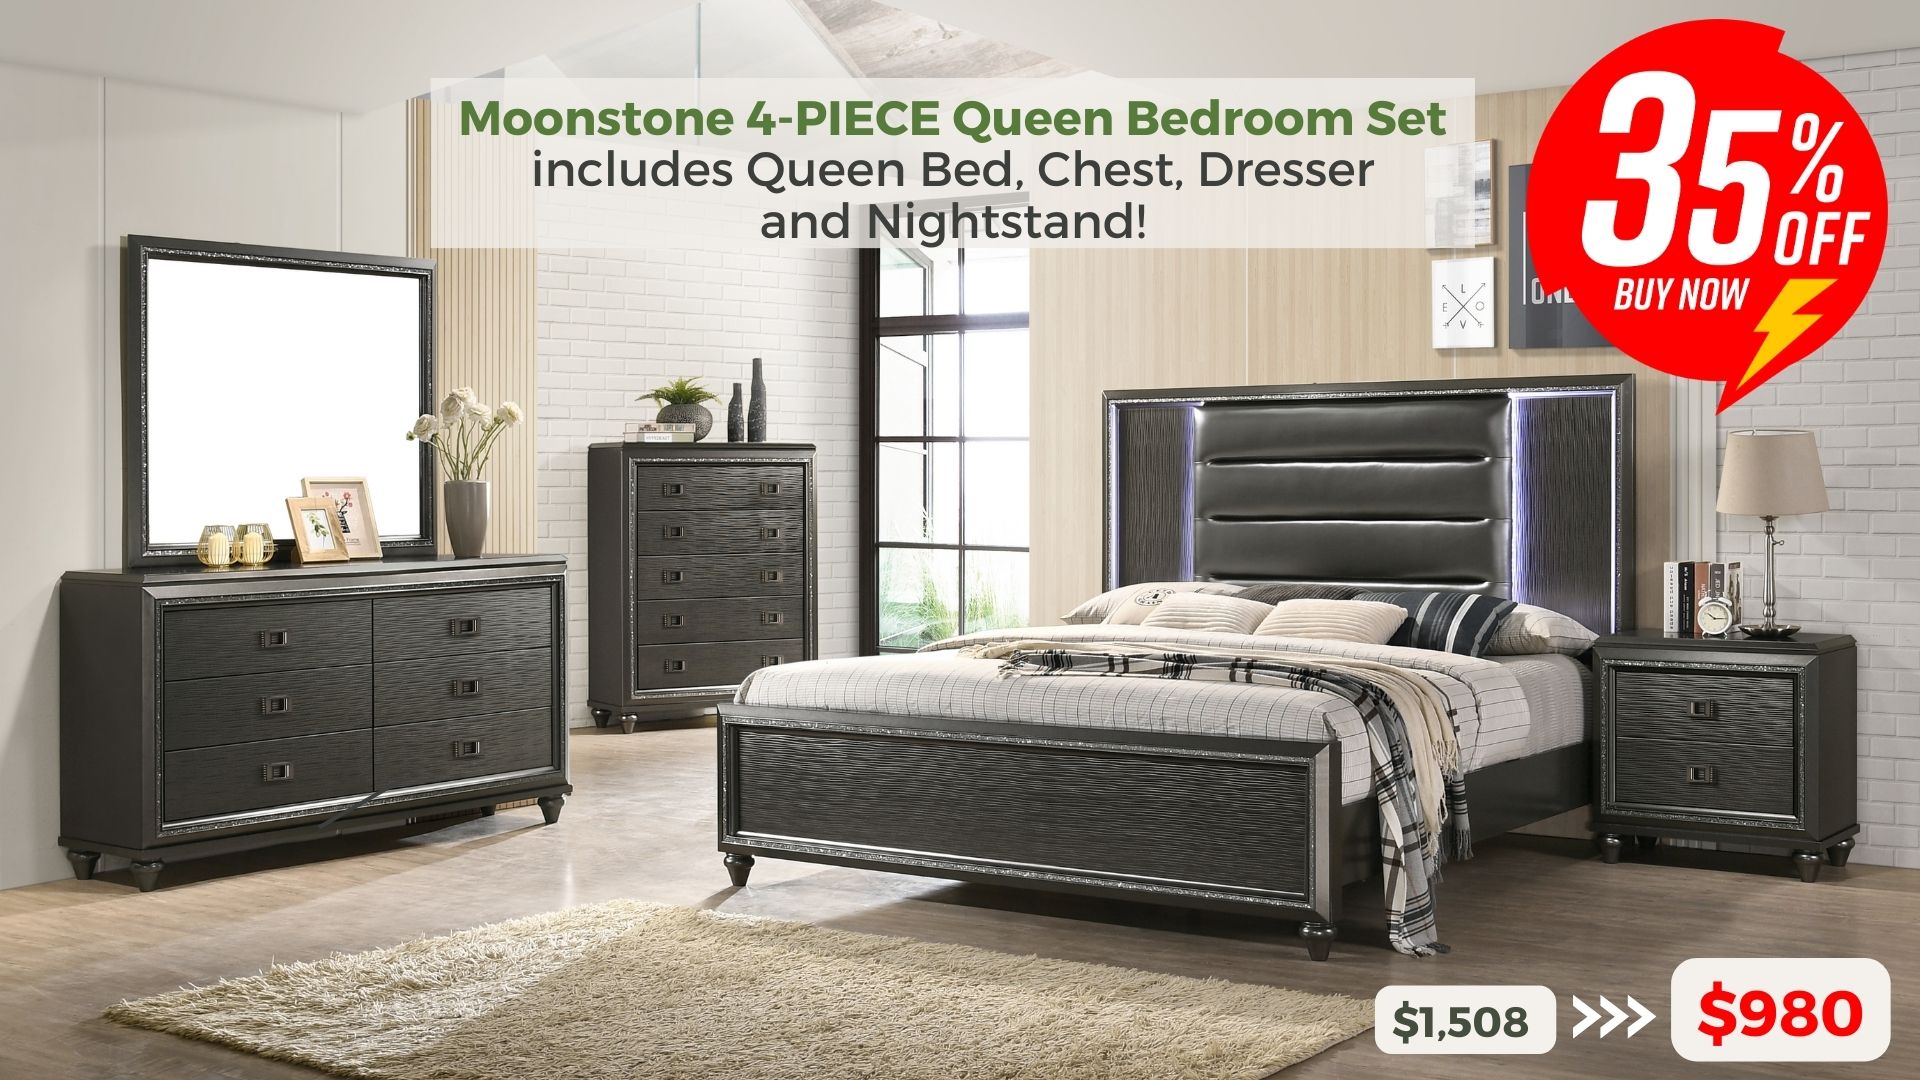 Moonstone 4-piece Queen Bedroom Set includes Queen Bed, Chest, Dresser and Nightstand. 35% off buy now $980